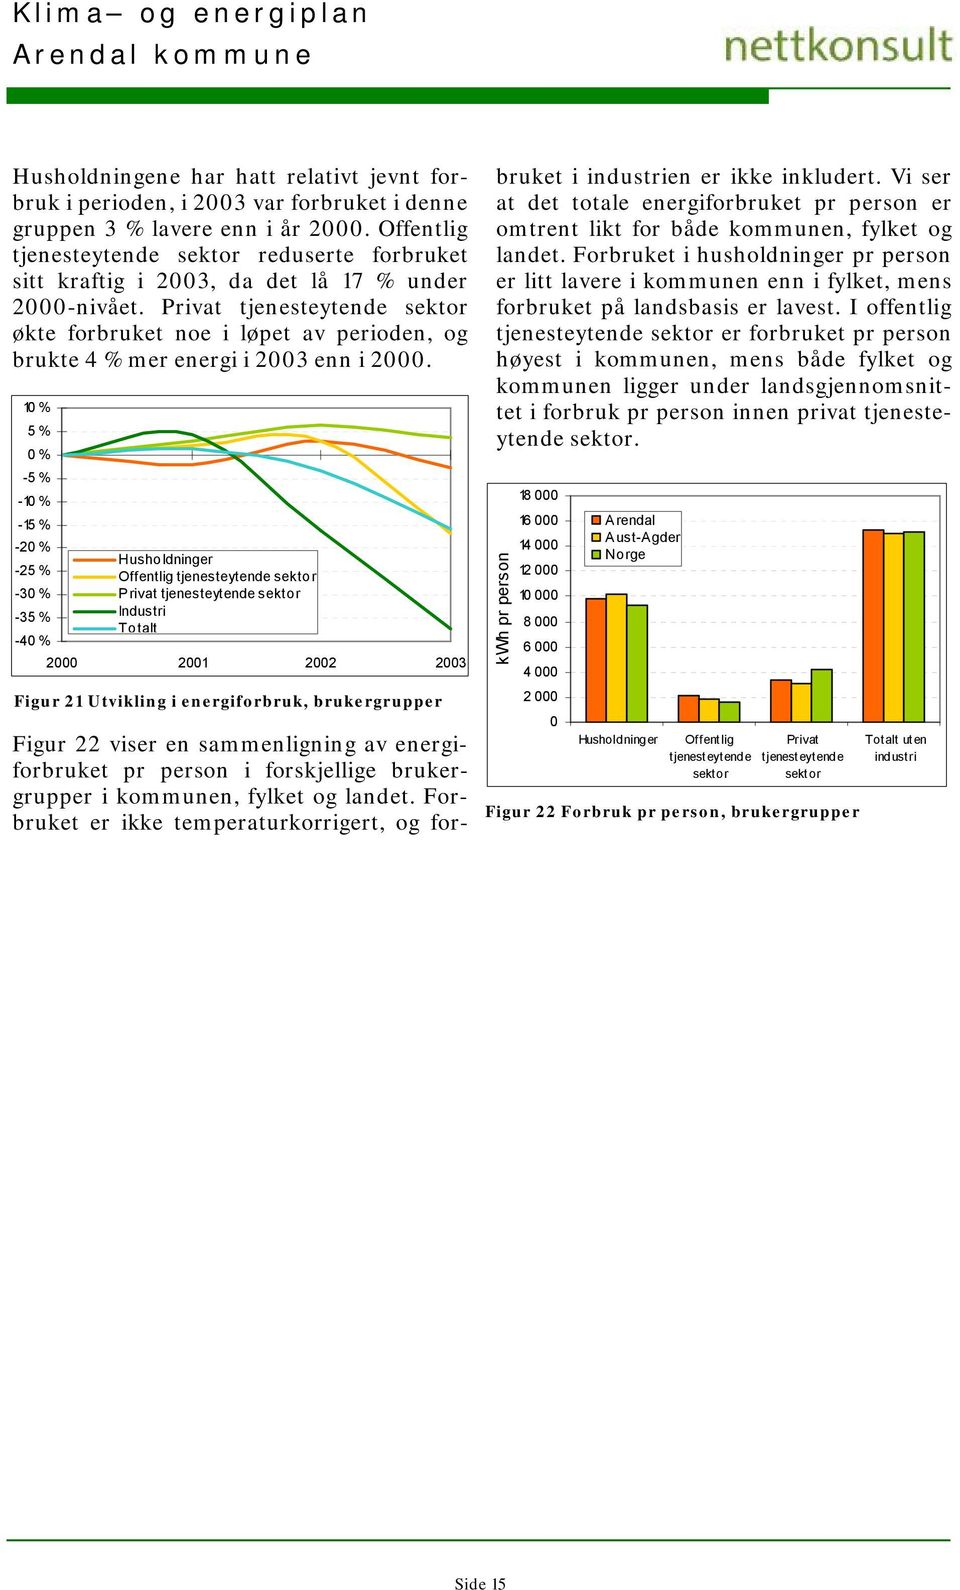 Privat tjenesteytende sektor økte forbruket noe i løpet av perioden, og brukte 4 % mer energi i 2003 enn i 2000.